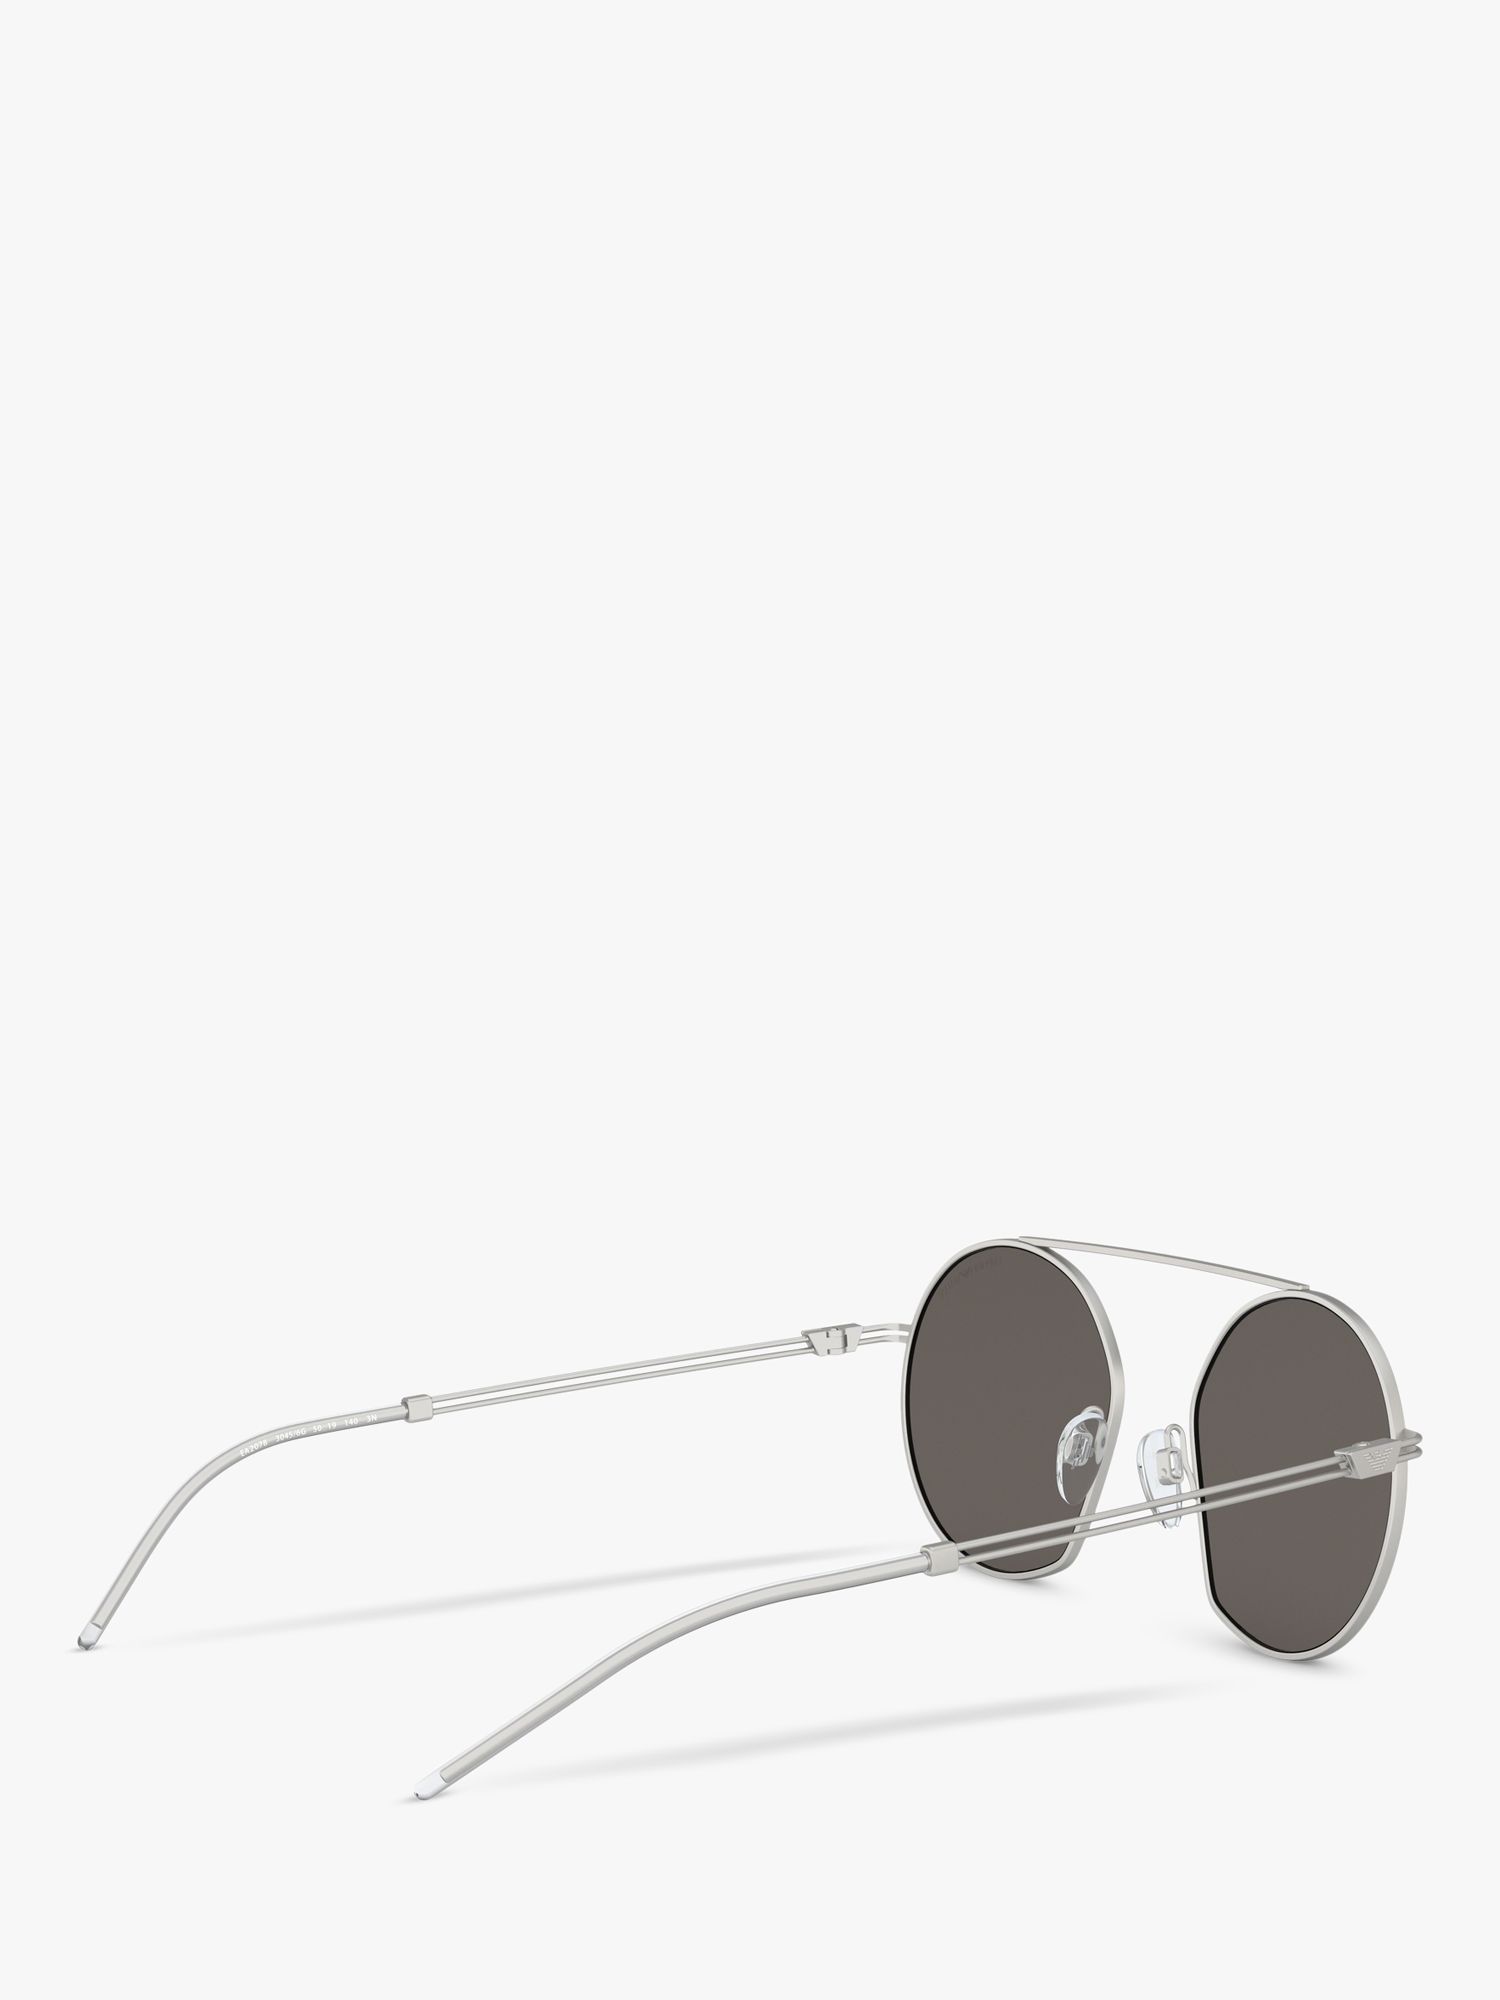 Emporio Armani EA2078 Men's Asymmetric Round Sunglasses, Matte Silver